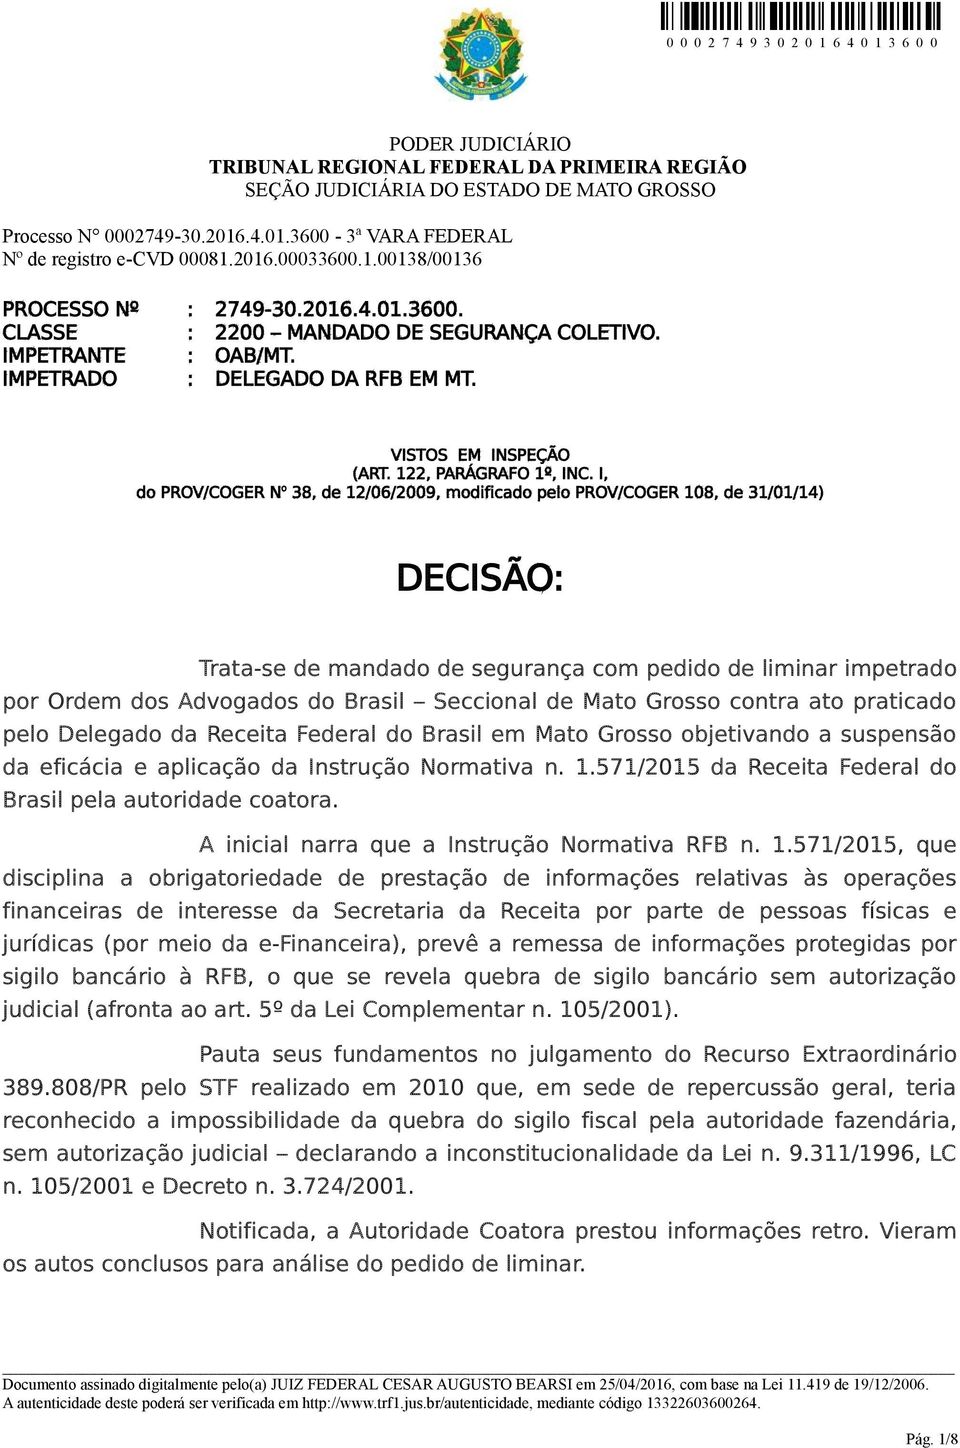 Seccional de Mato Grosso contra ato praticado pelo Delegado da Receita Federal do Brasil em Mato Grosso objetivando a suspensão da eficácia e aplicação da Instrução Normativa n. 1.